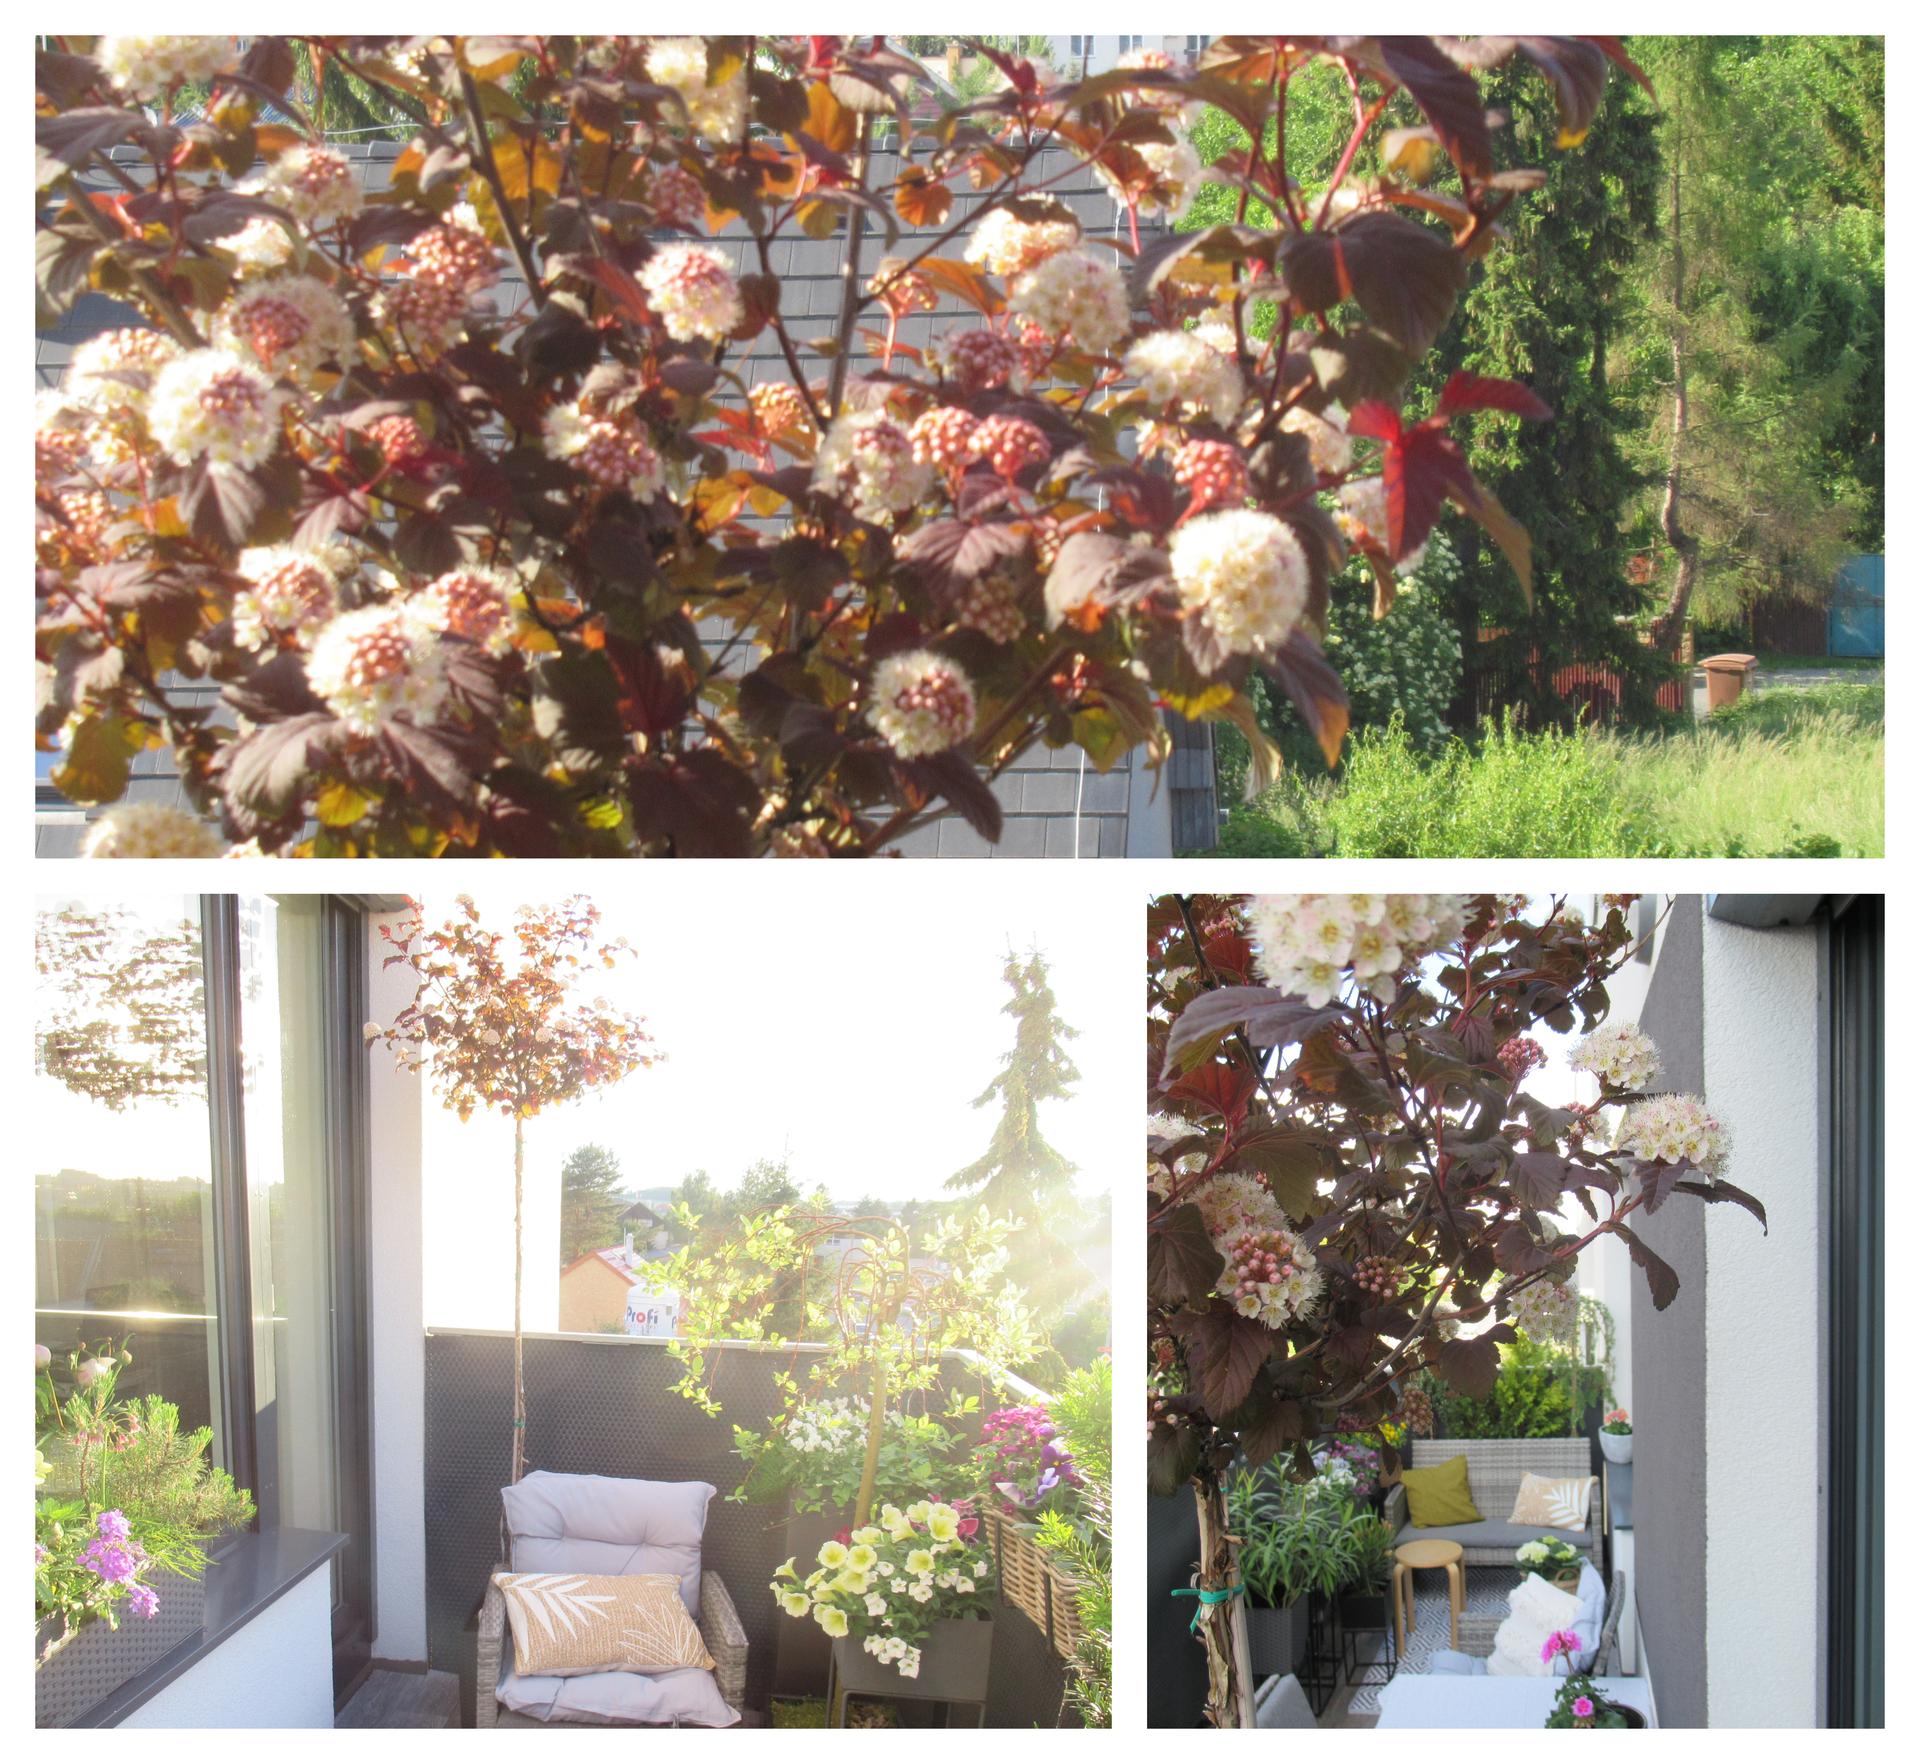 Naše malé "venku"🌸🌺 - Má Tavola na kmínku, přežila zimu v květináči na balkoně a letos nádherně vykvetla, mám z ní radost :)  Hezkou sobotu, i když u nás bude zřejmě deštivá.